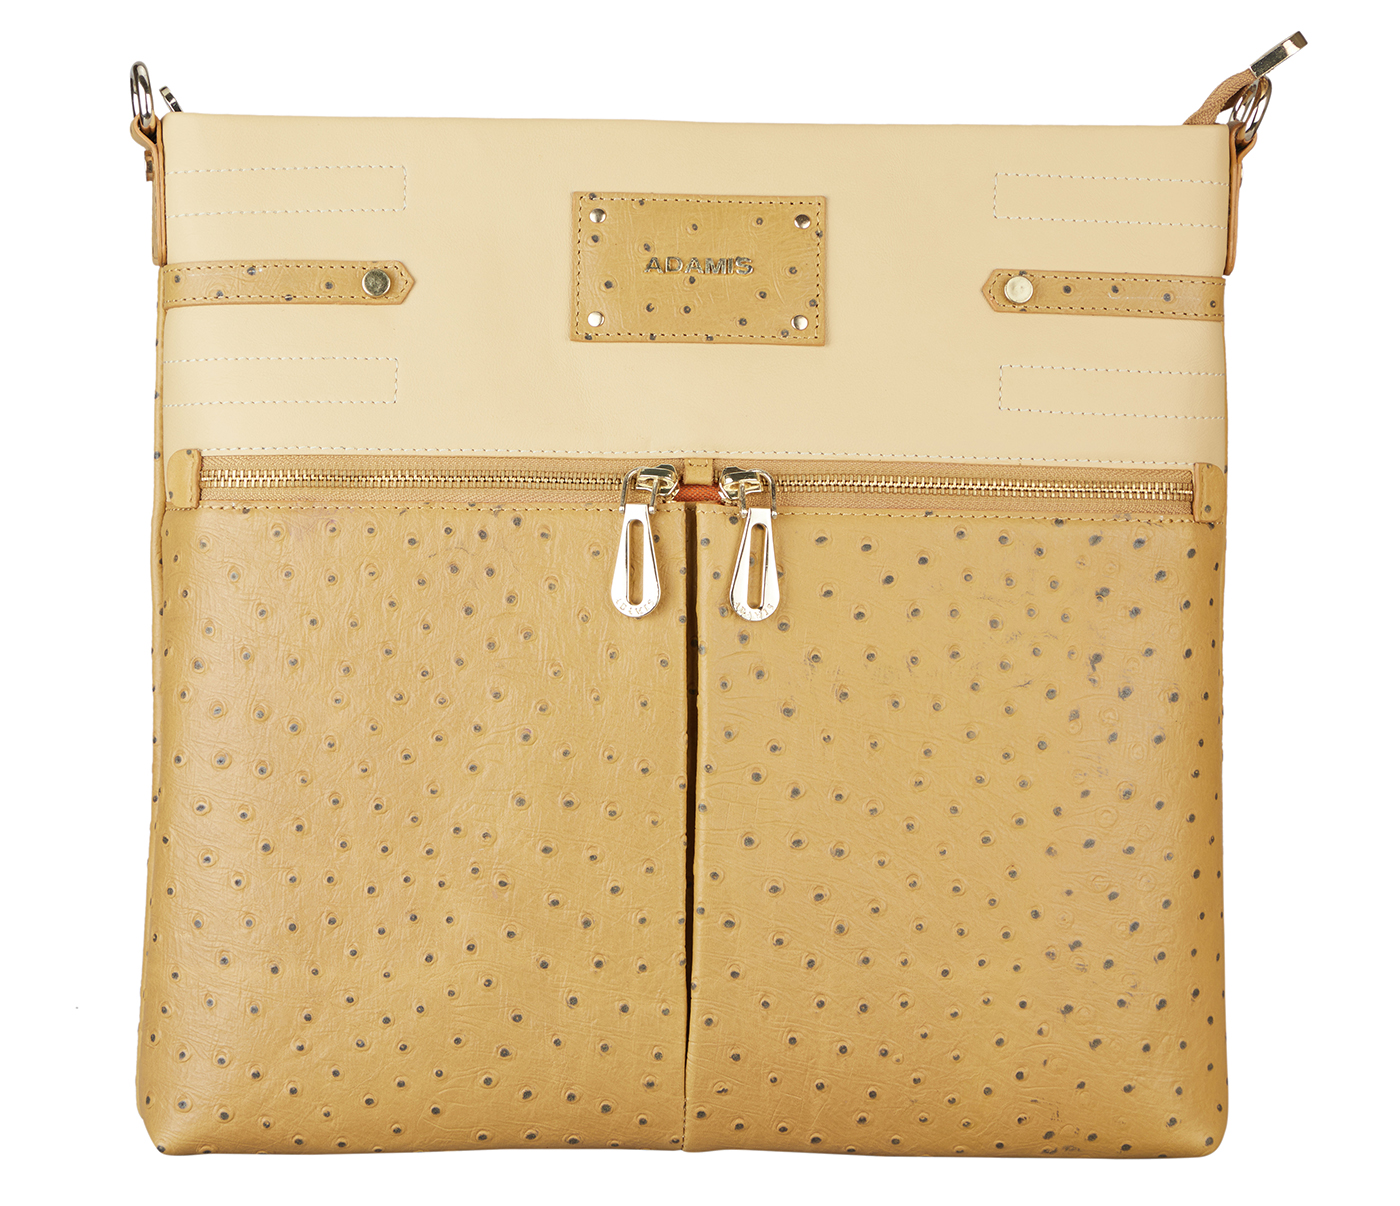 Rochas Glossy leather handbag - Buy online on Glamest Fashion Outlet -  Glamest.com | Online Designer Fashion Outlet | Bags, Mens leather bag,  Handbag